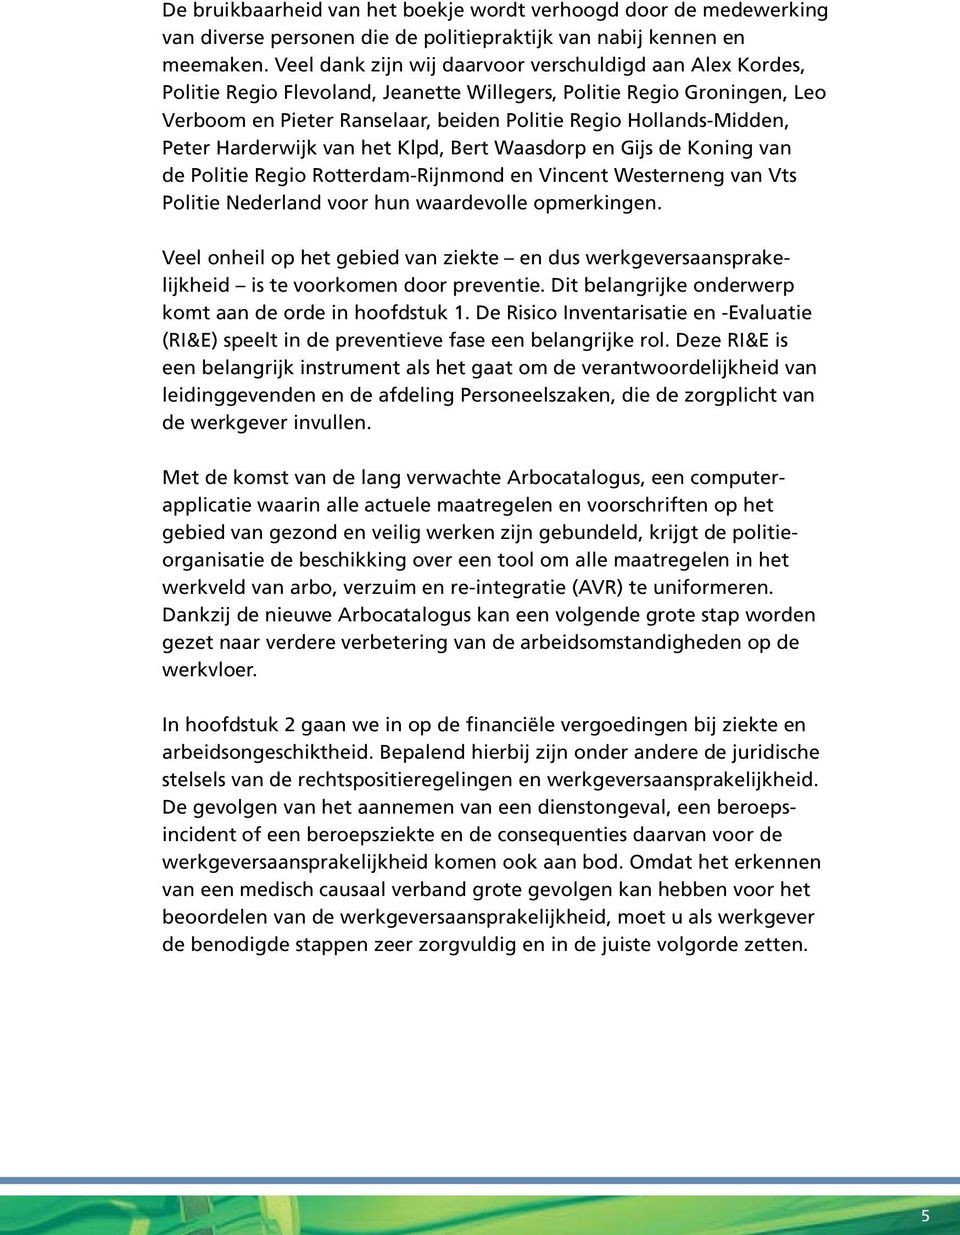 Peter Harderwijk van het Klpd, Bert Waasdorp en Gijs de Koning van de Politie Regio Rotterdam-Rijnmond en Vincent Westerneng van Vts Politie Nederland voor hun waardevolle opmerkingen.